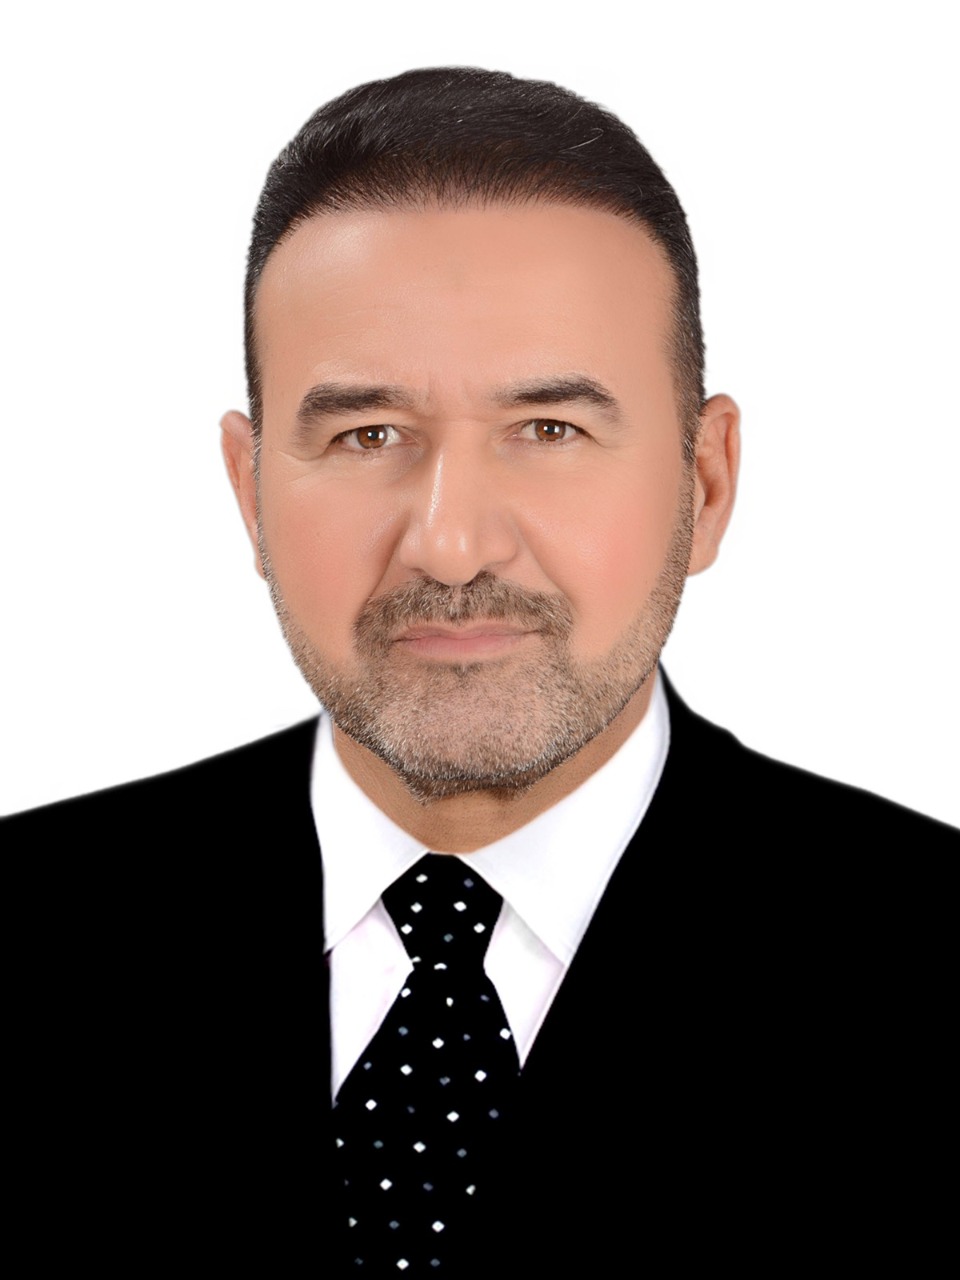 Dr Najm Abbas Jaber Al-Awwadi